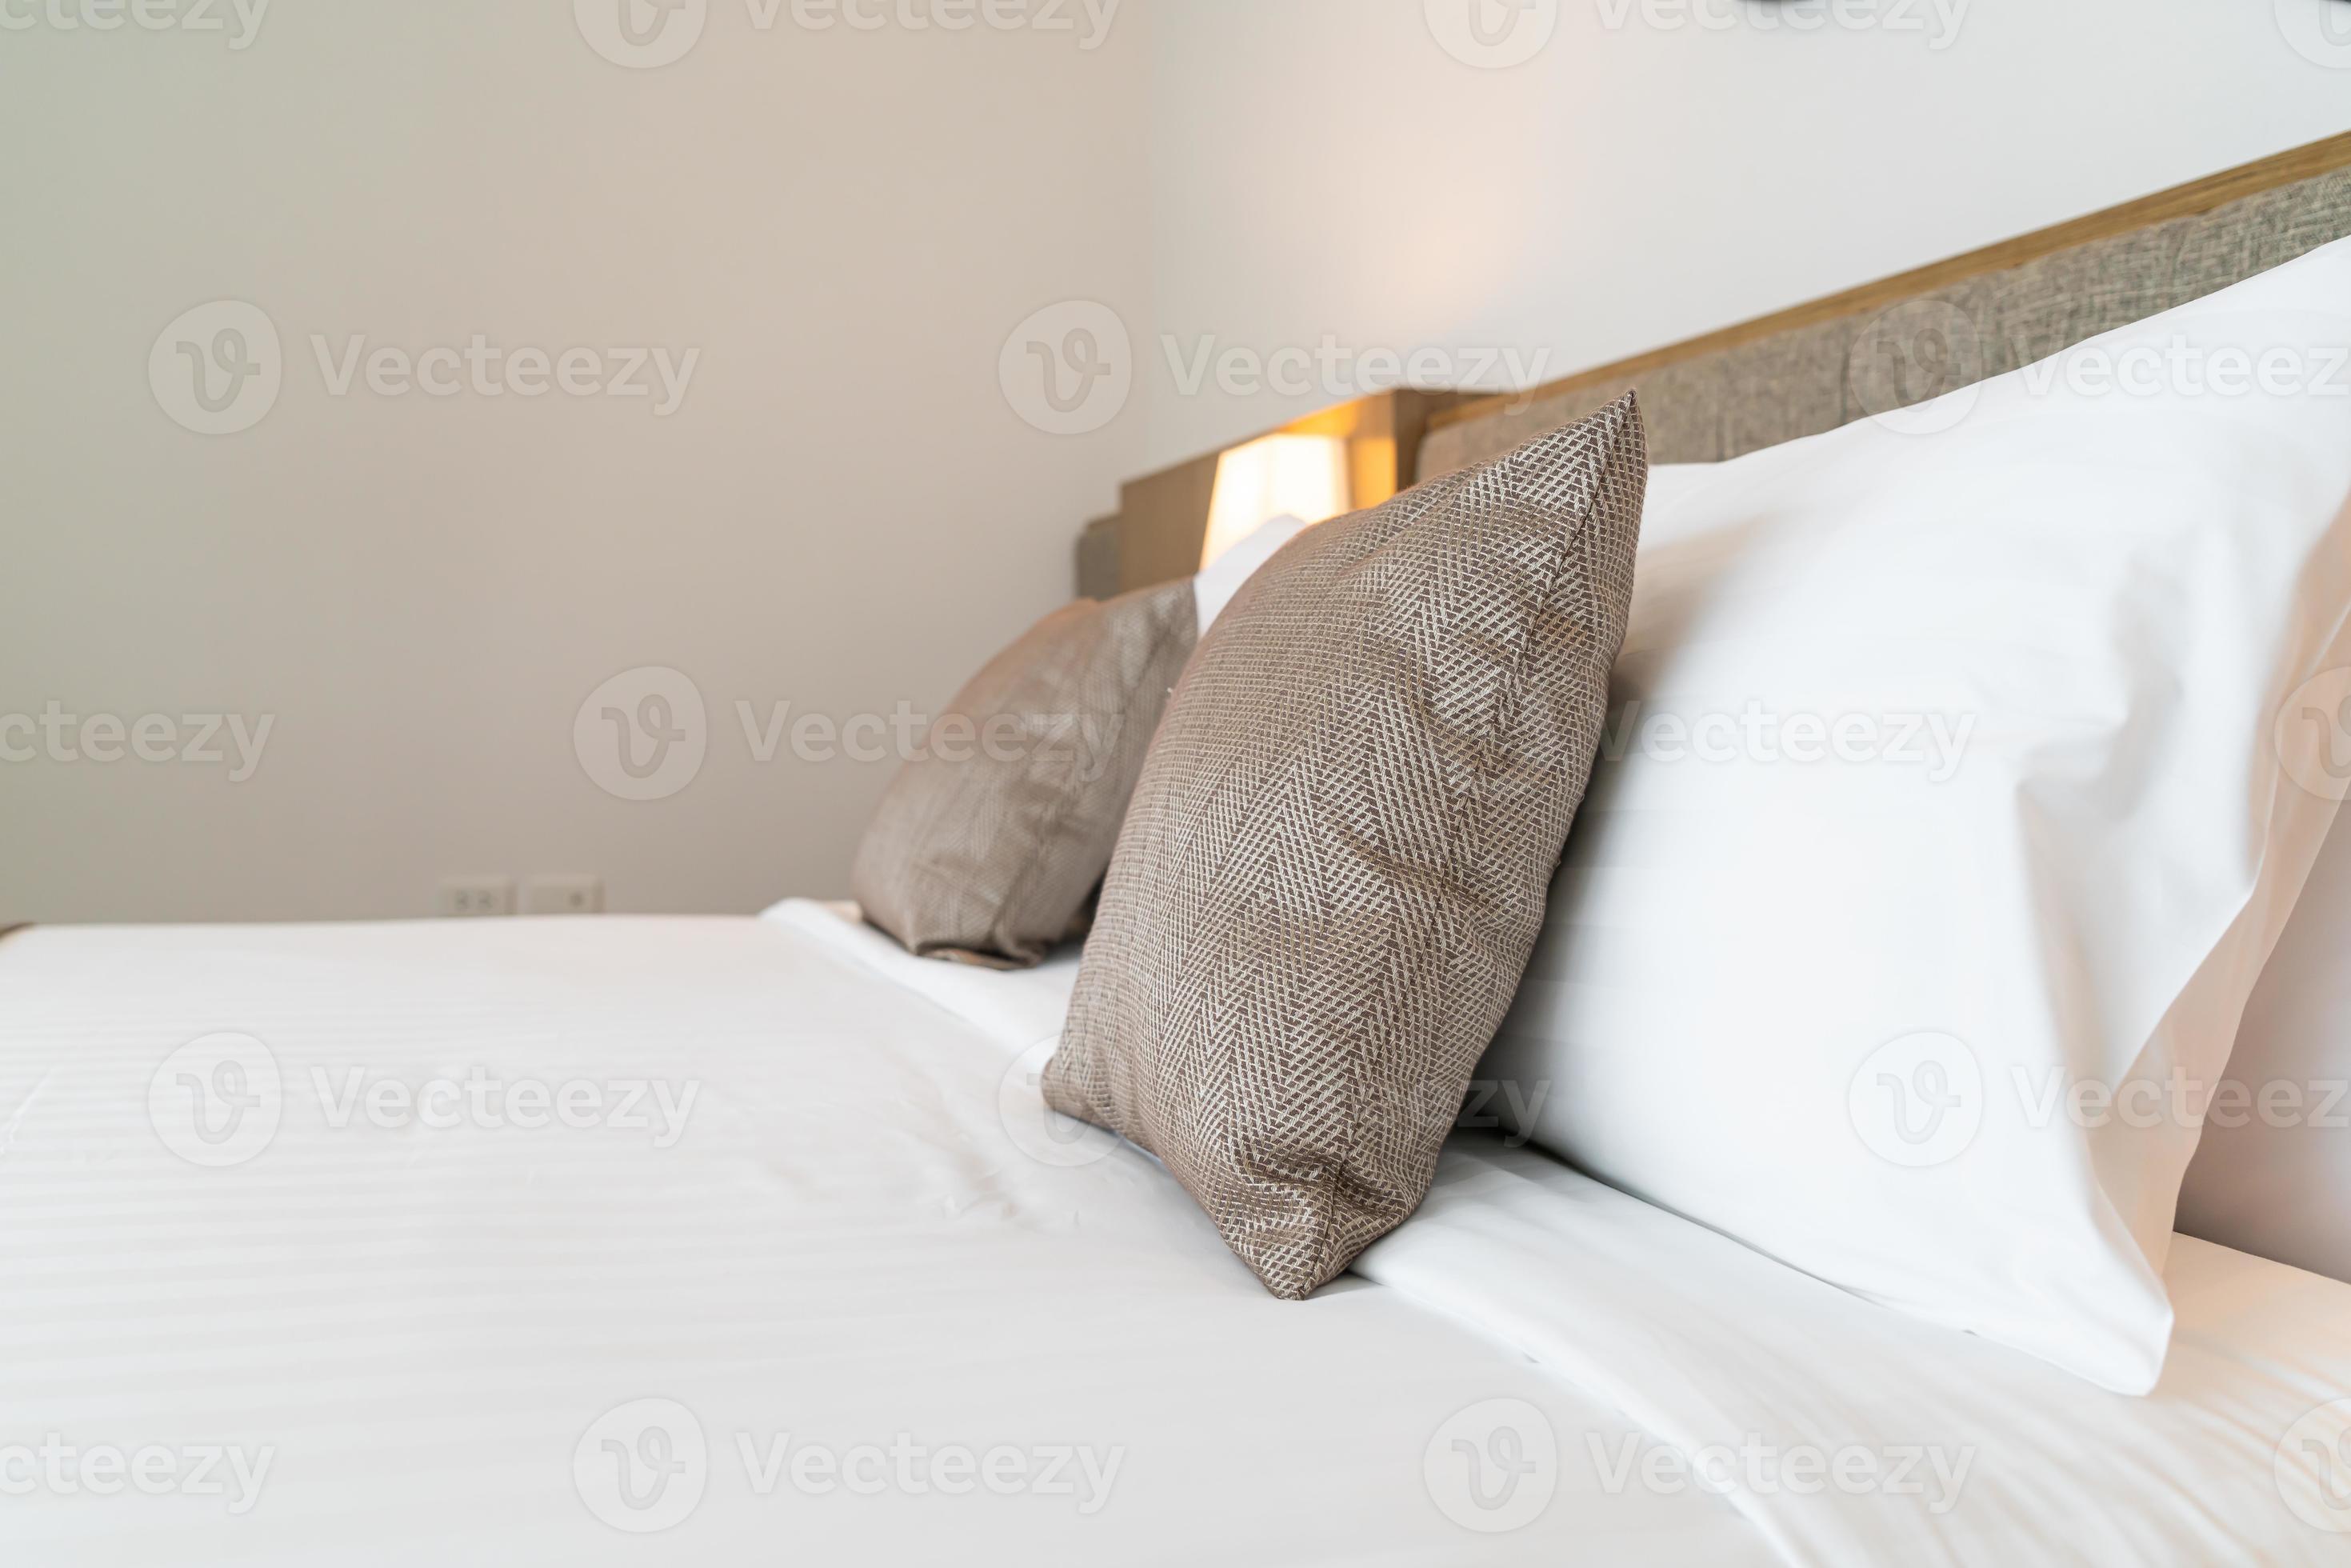 invoeren Assimilatie Diversen mooi kussen op bed decoratie kamer interieur 2993019 stockfoto bij Vecteezy